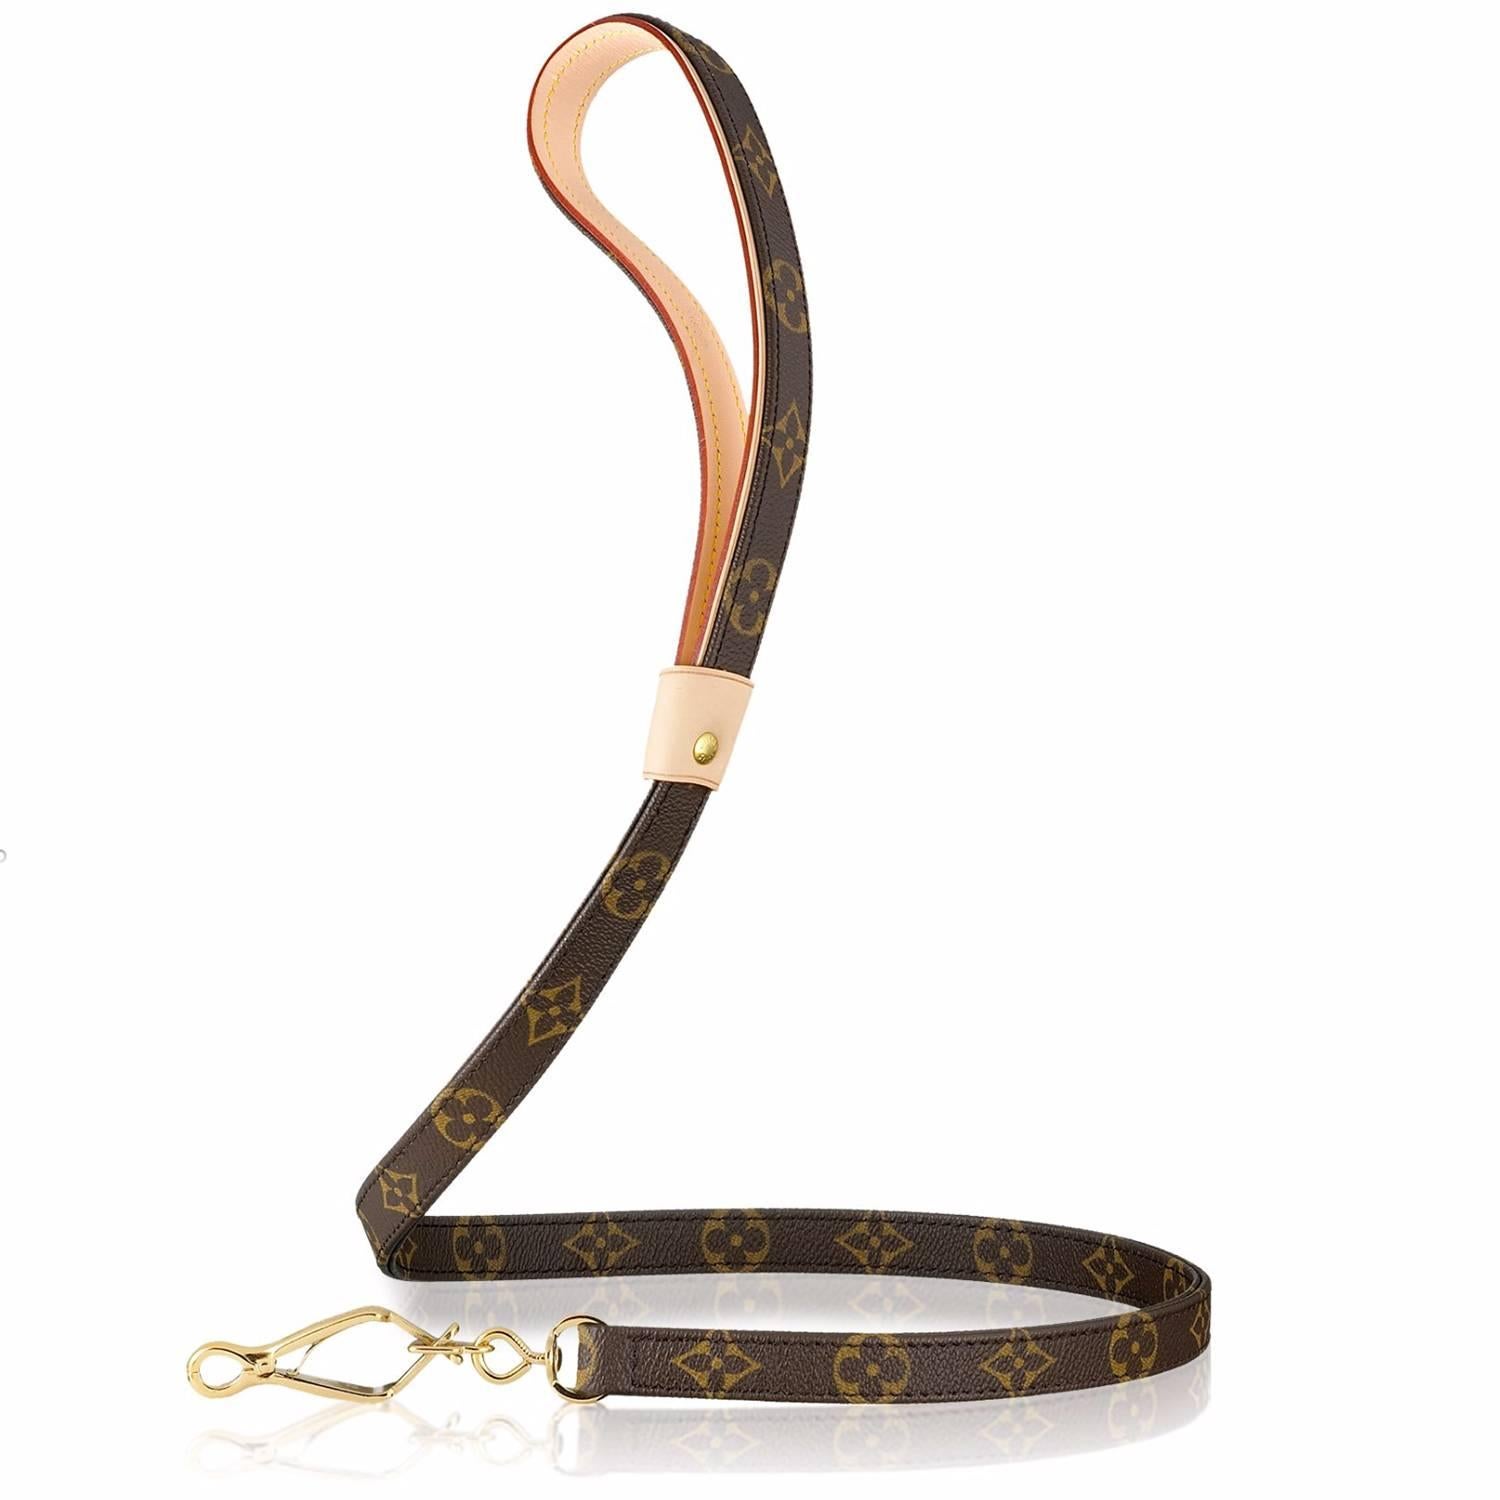 Mit der Baxter Hundeleine von Louis Vuitton können Sie Ihren Sinn für Stil auf Ihren vierbeinigen Begleiter übertragen und ihm gleichzeitig das Halsband reichen! Unter Beibehaltung der höchsten Designstandards der Luxusmarke umfasst die Leine ein